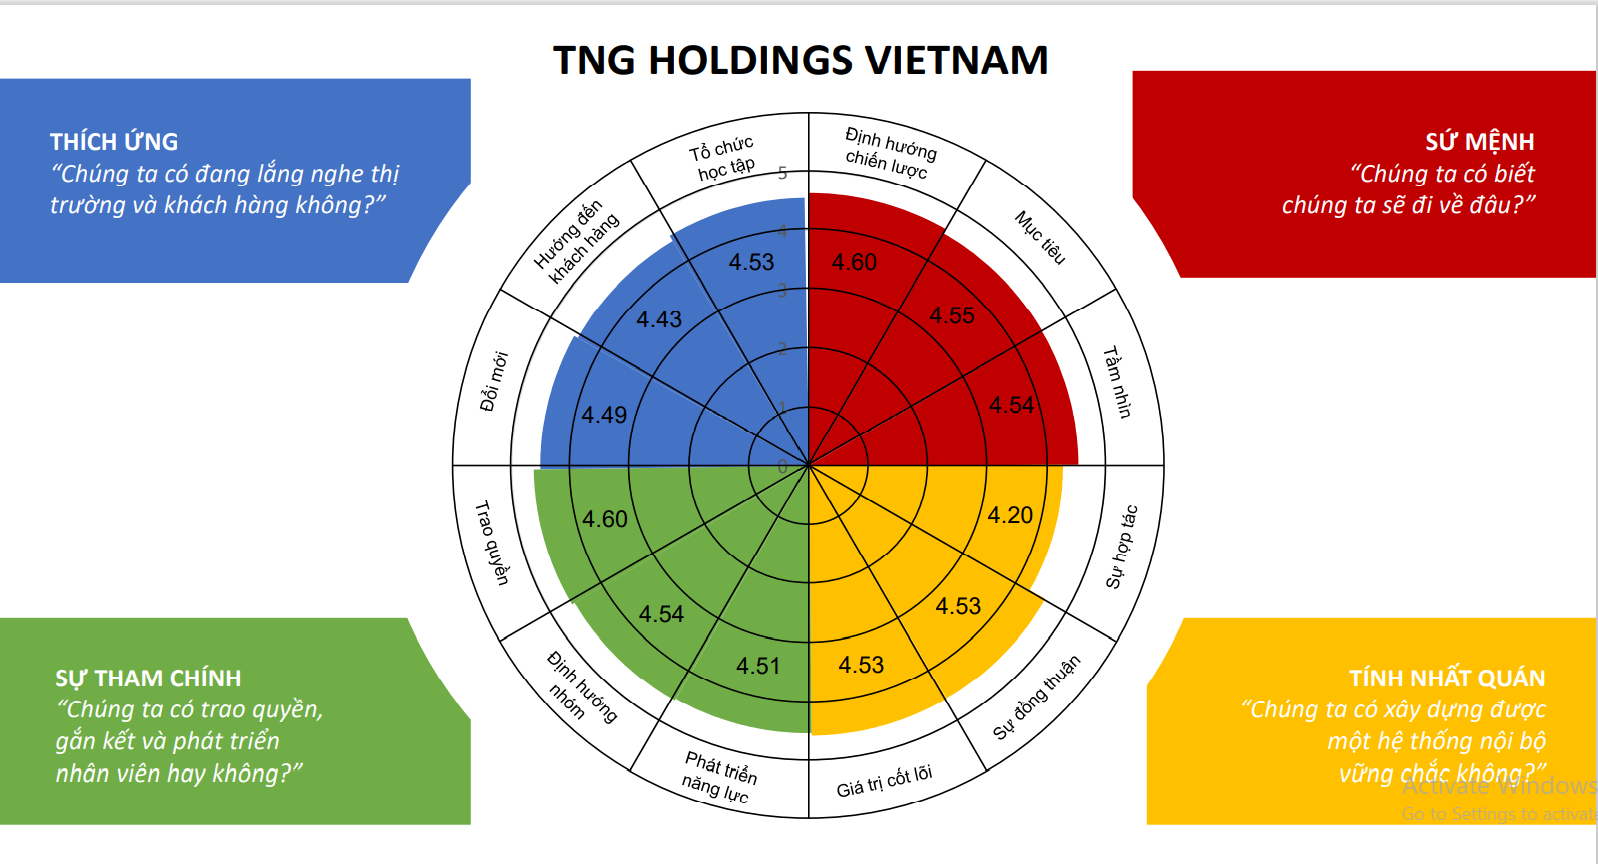 Kết quả đánh giá văn hóa doanh nghiệp theo mô hình Denison của TNG Holdings Vietnam với sự cân bằng cao giữa các tiêu chí.